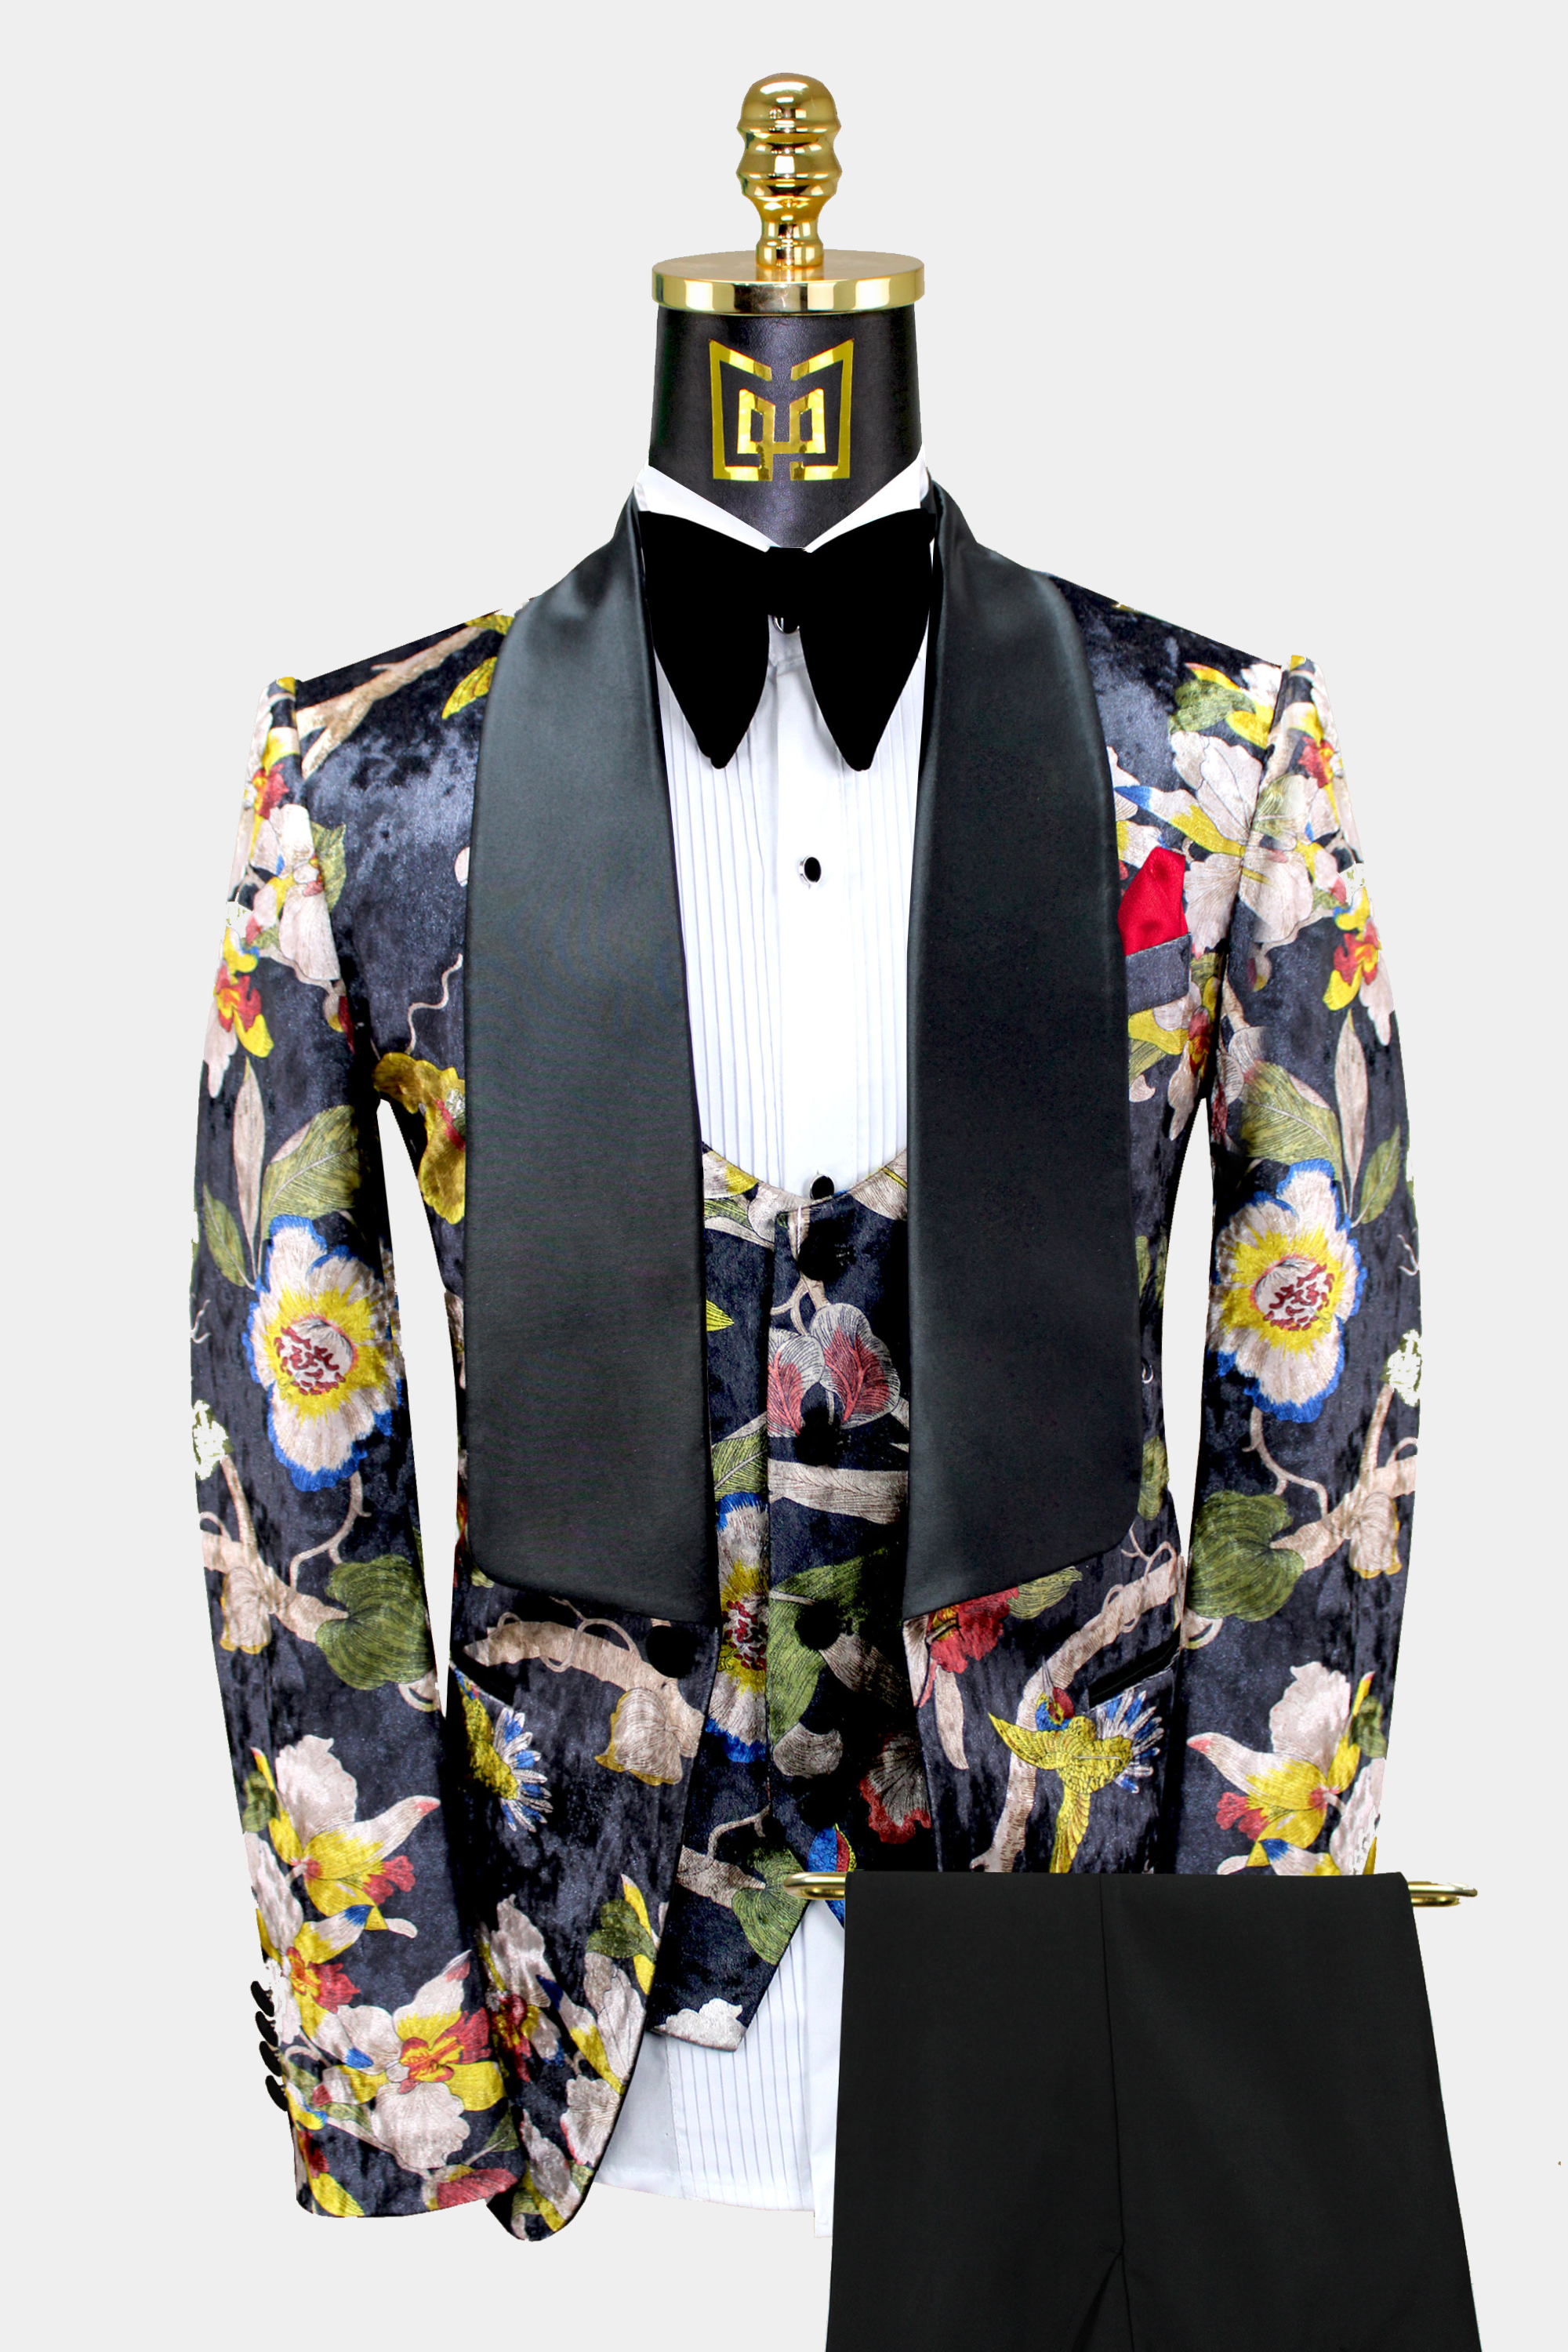 Mens-Floral-Print-Tuxedo-Wedidng-Groom-Prom-Suit-from-Gentlemansguru.com_